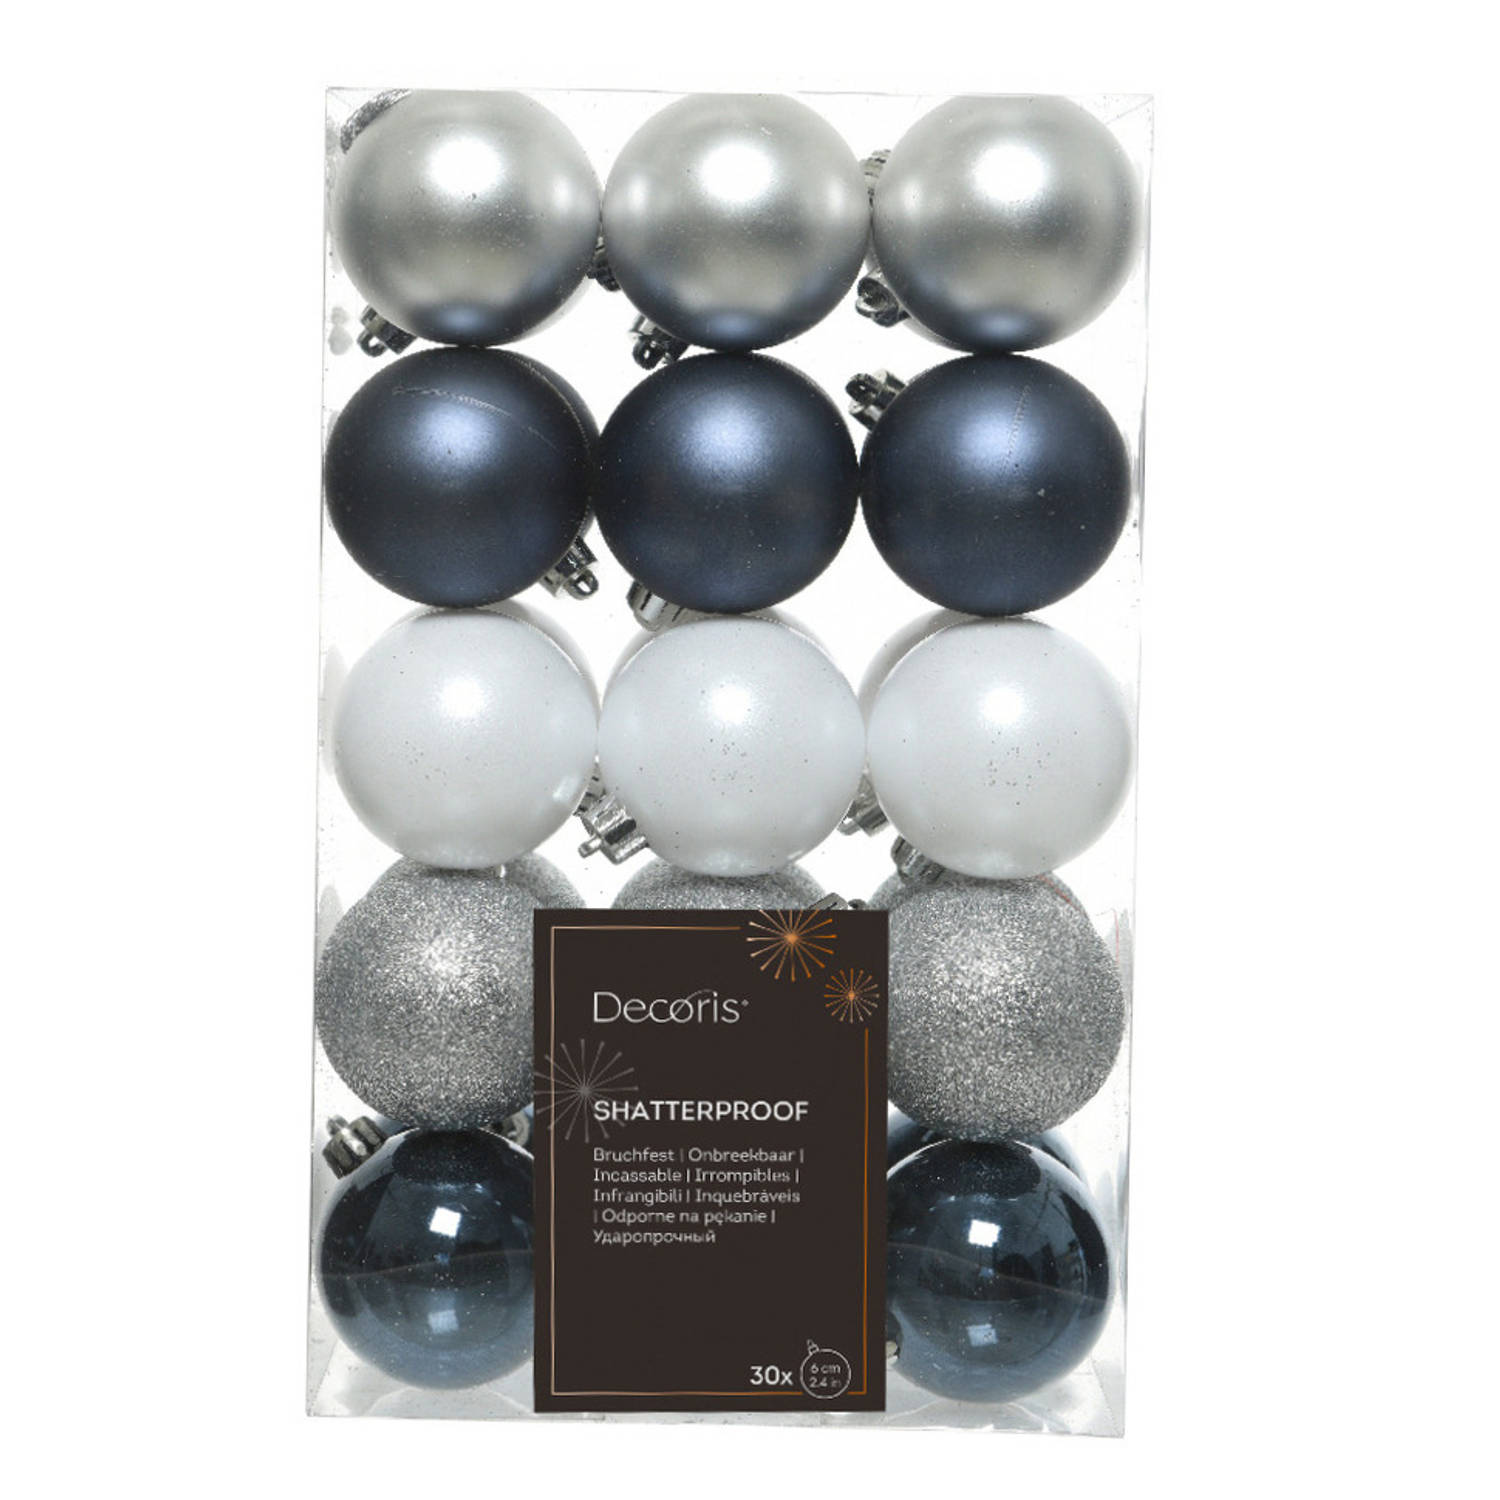 Decoris kerstballen 30x donkerblauw-wit-zilver 6 cm -kunststof Kerstbal